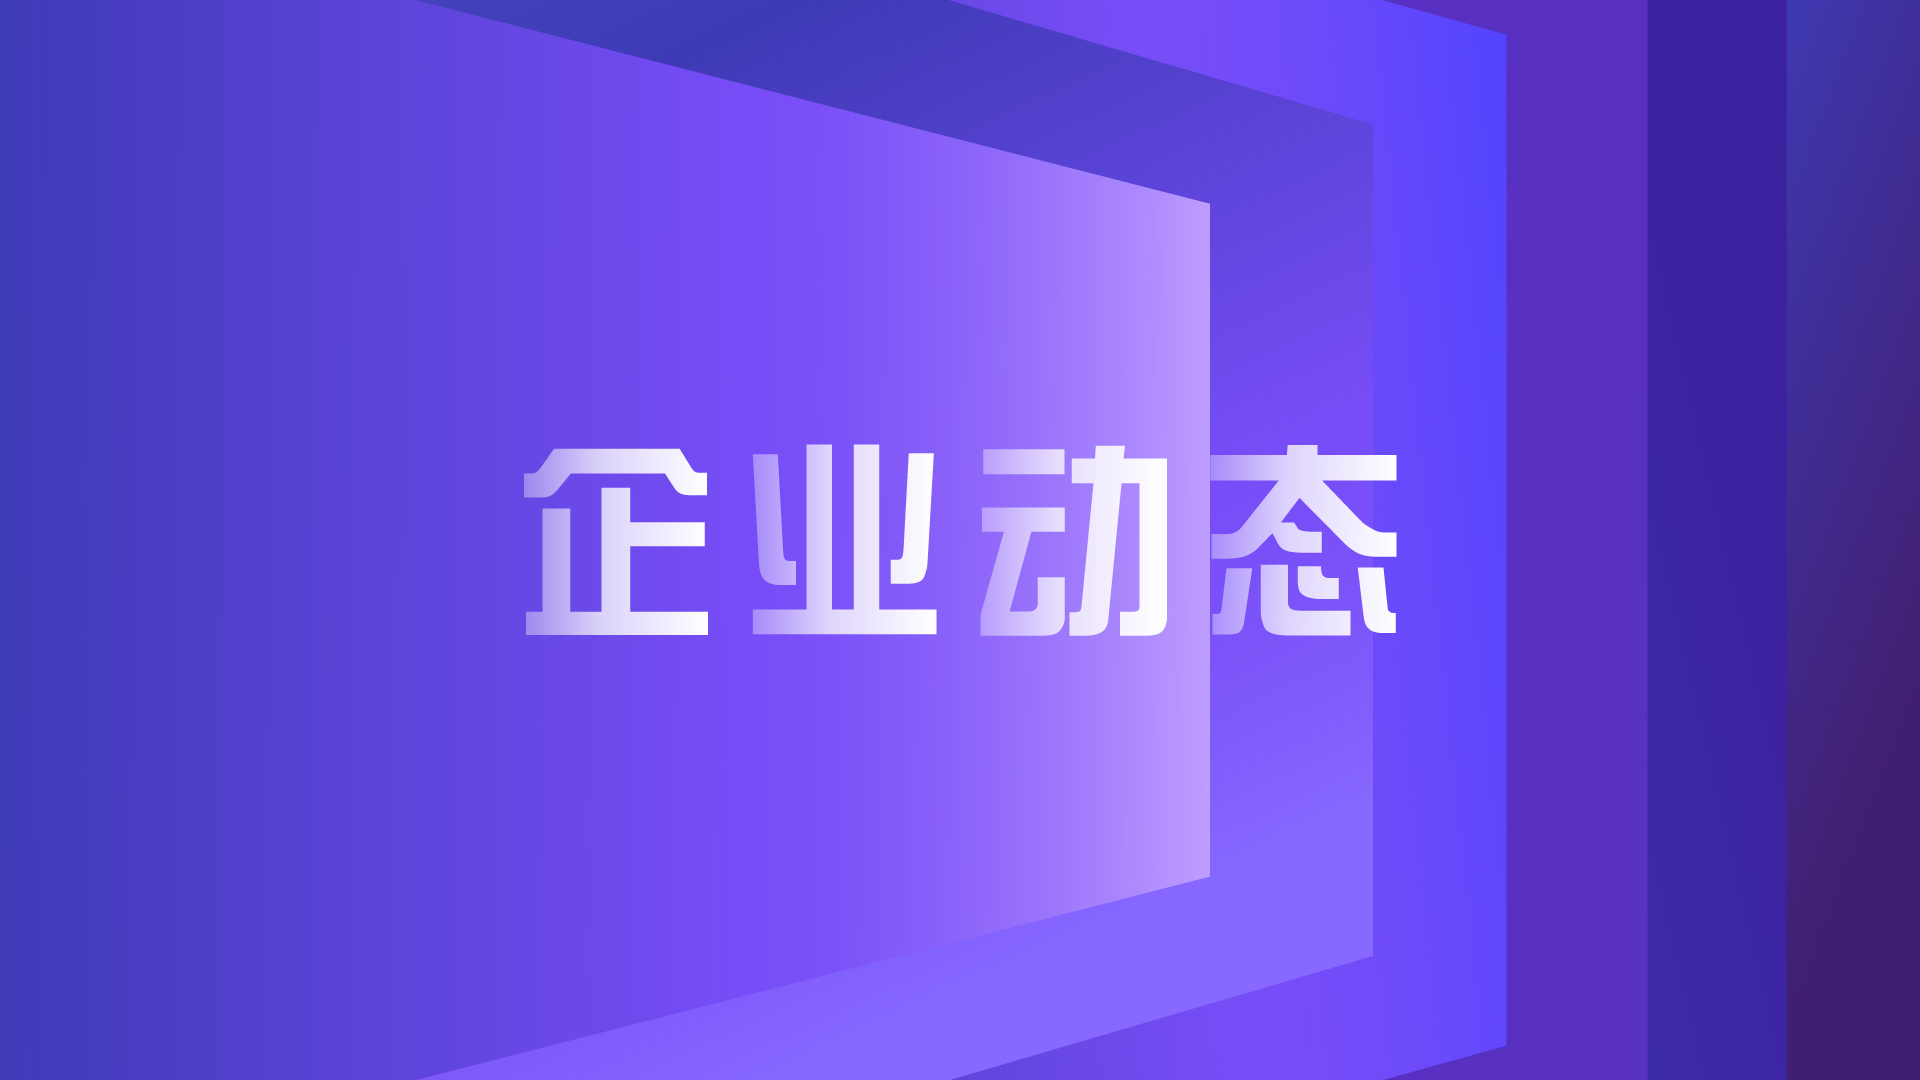 企业动态 | 紫光展锐6G与天地一体化技术发展研讨会在京成功举办